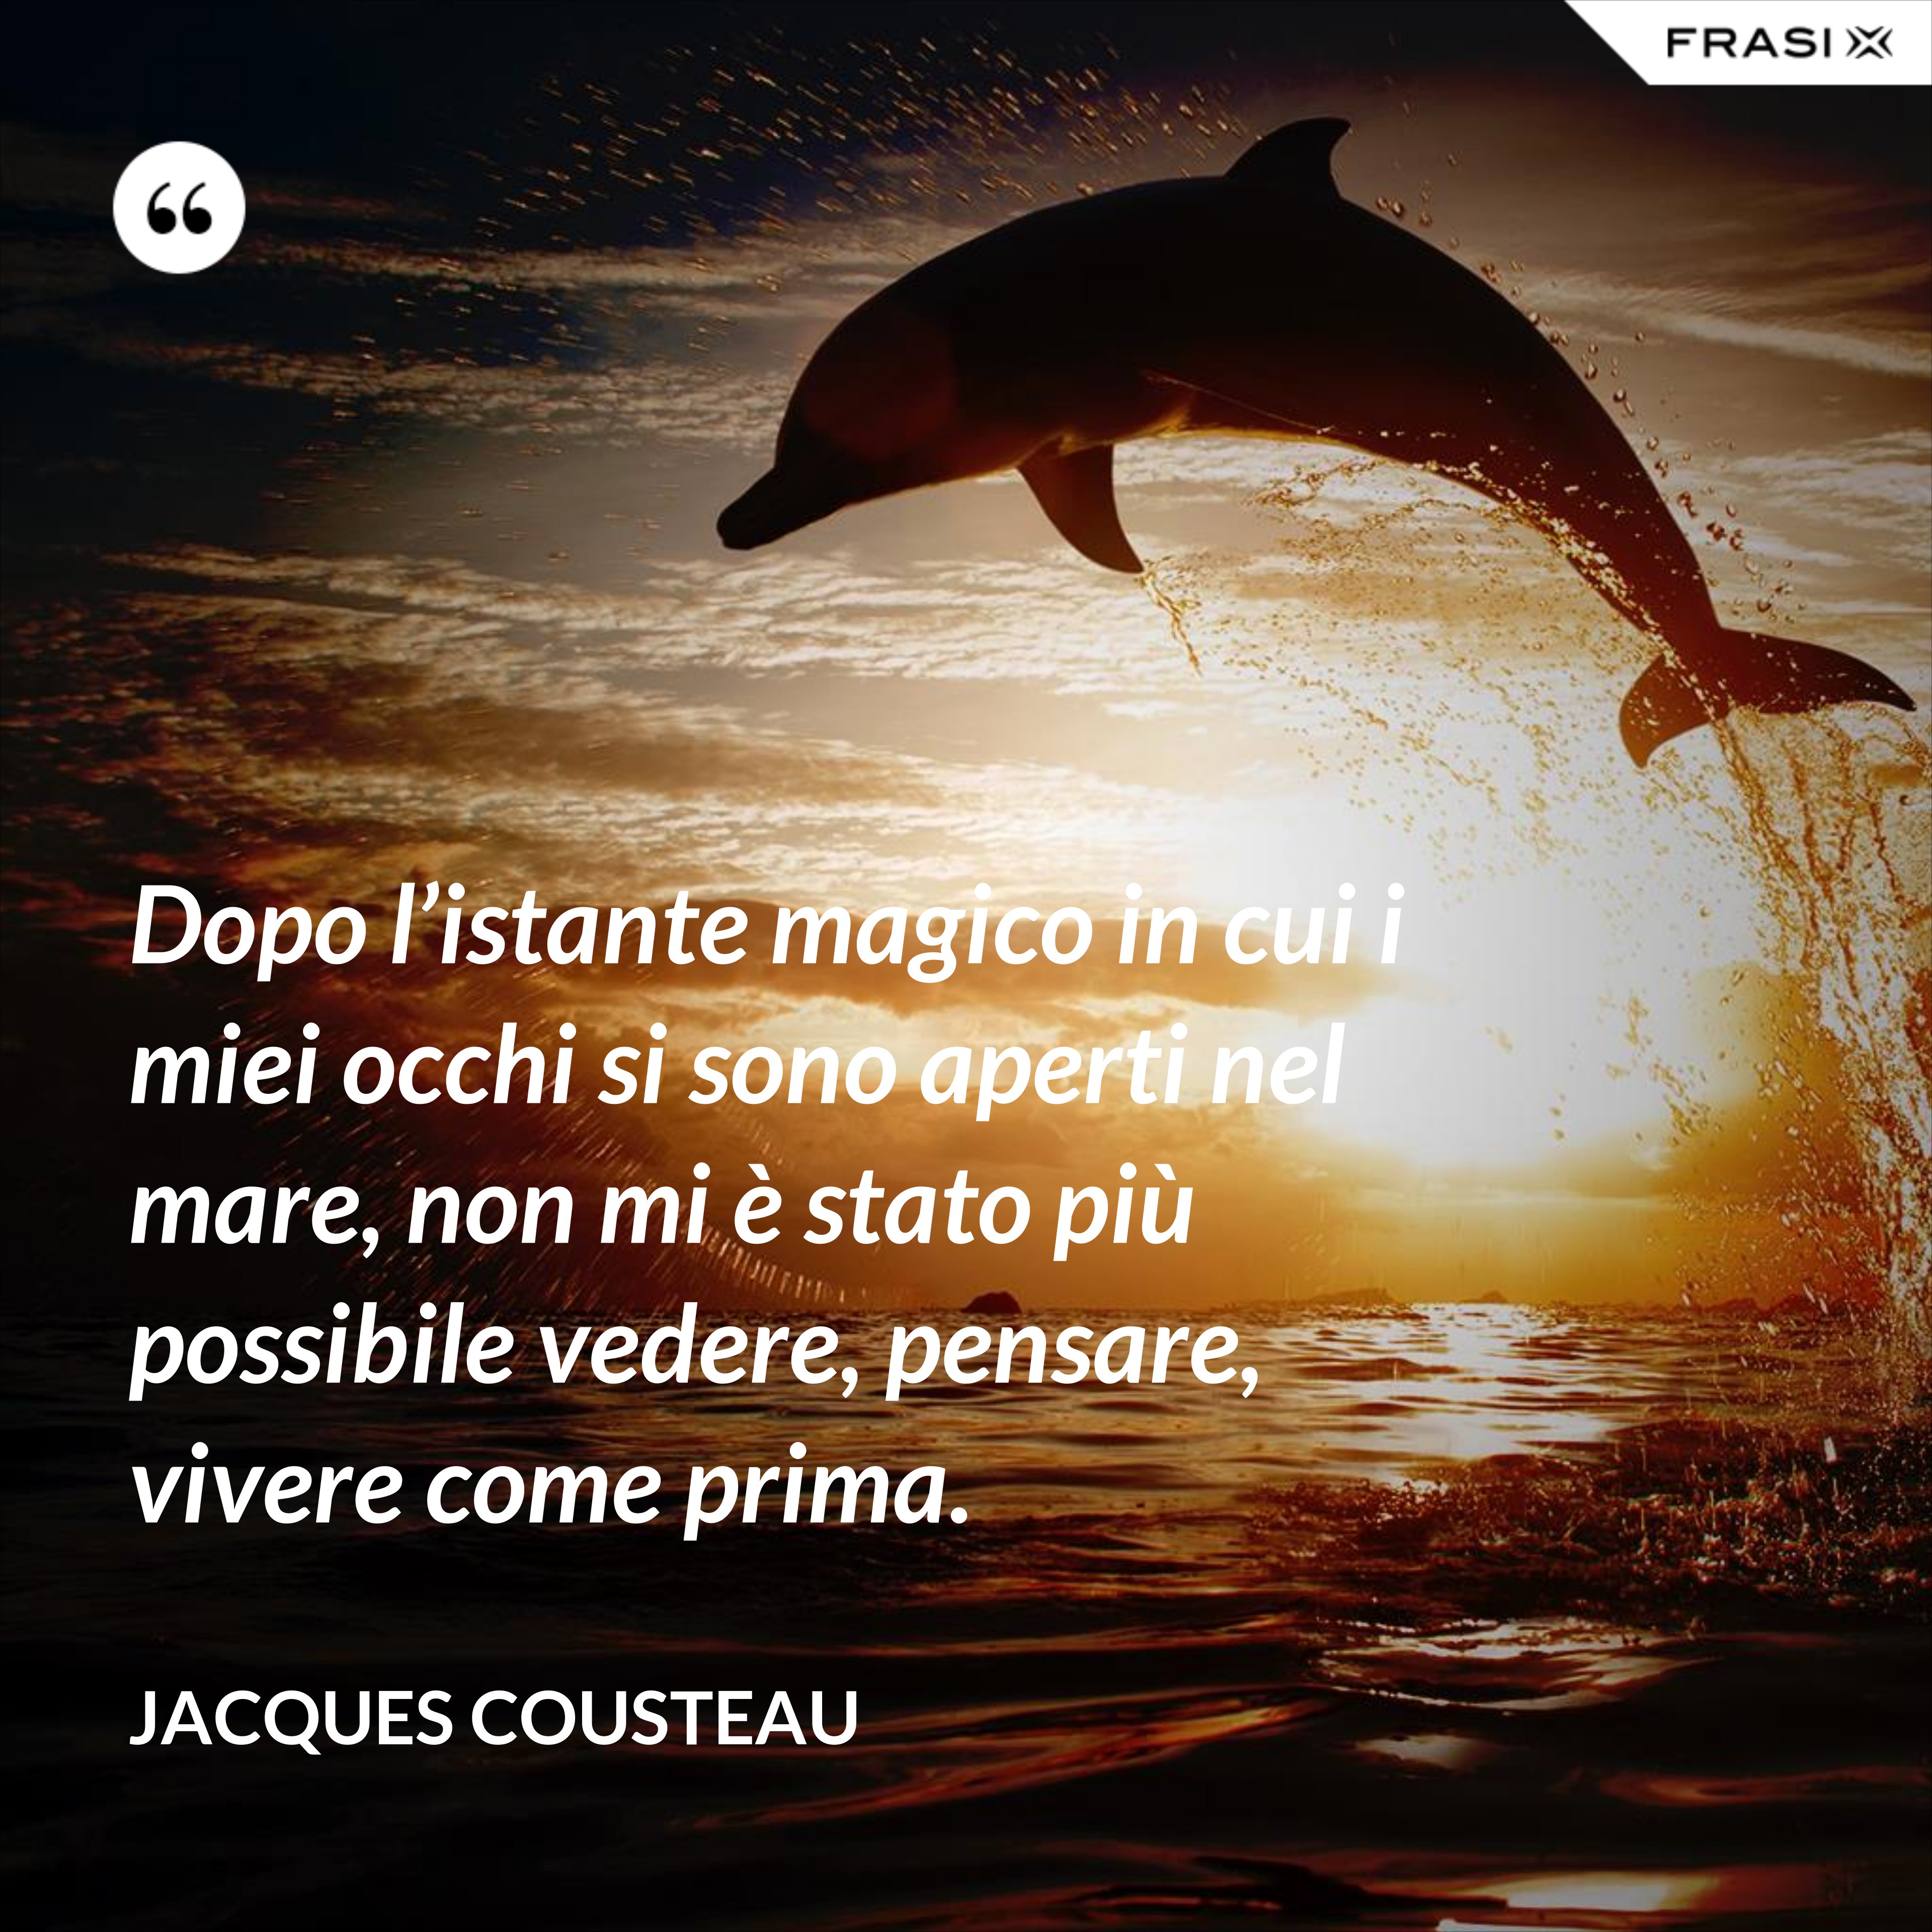 Dopo l’istante magico in cui i miei occhi si sono aperti nel mare, non mi è stato più possibile vedere, pensare, vivere come prima. - Jacques Cousteau